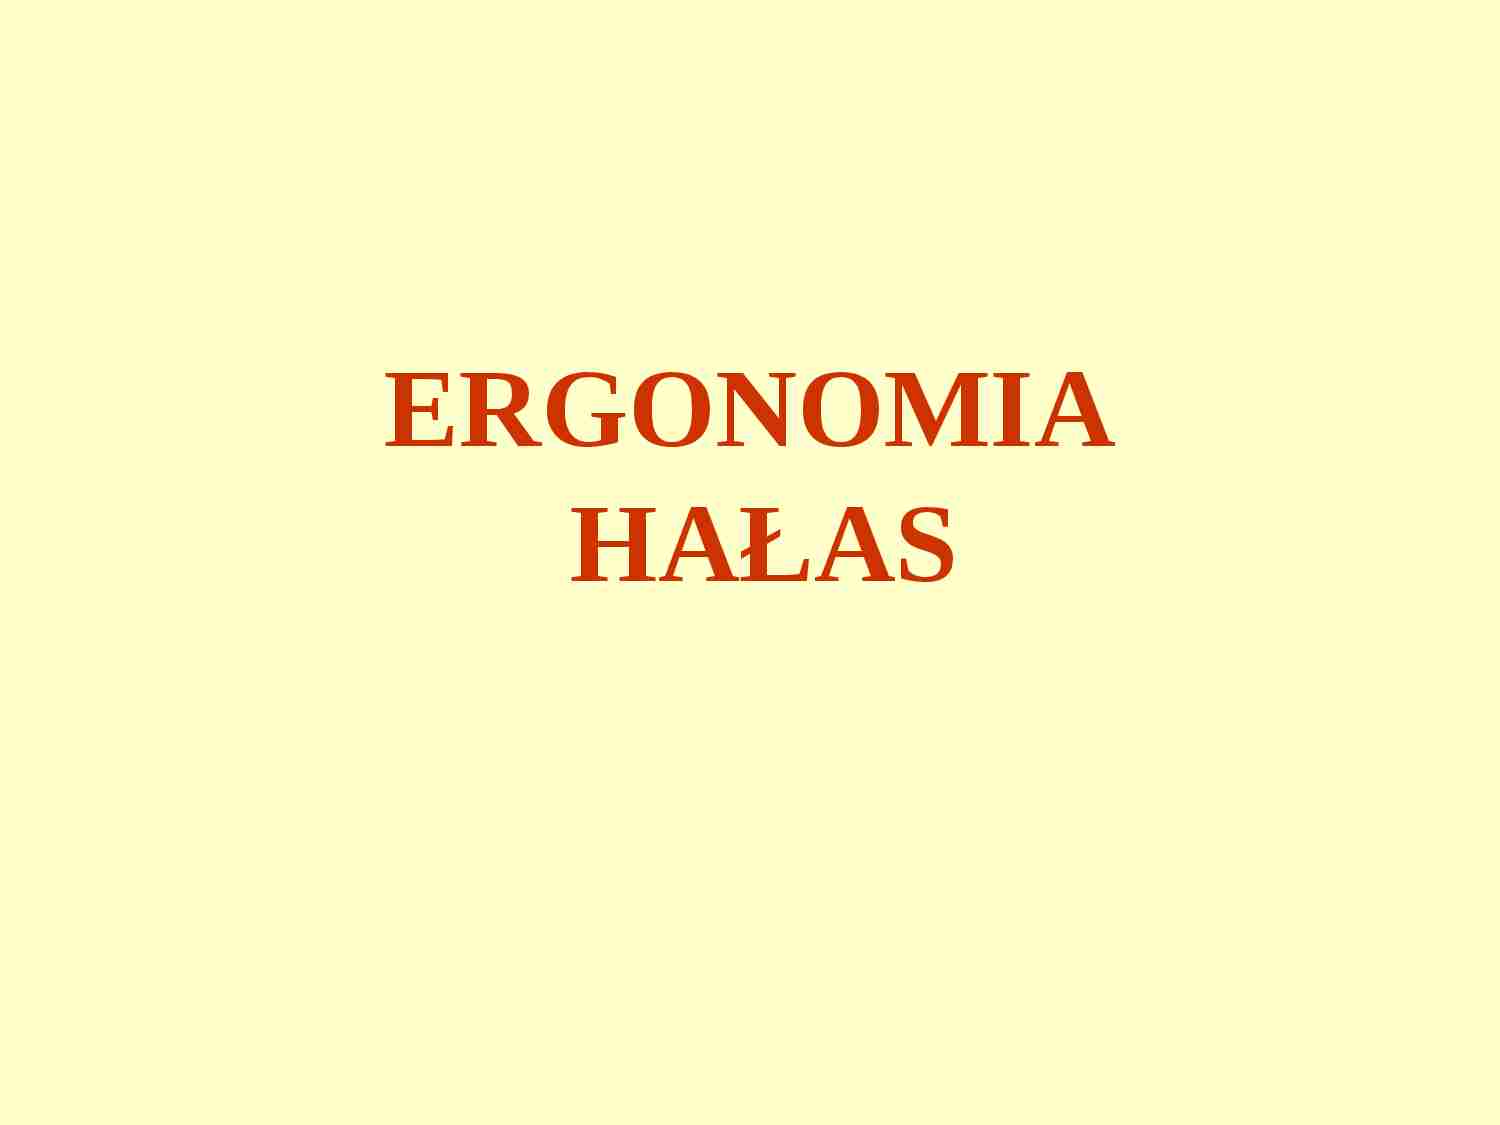 ergonomia - hałas - prezentacja - strona 1